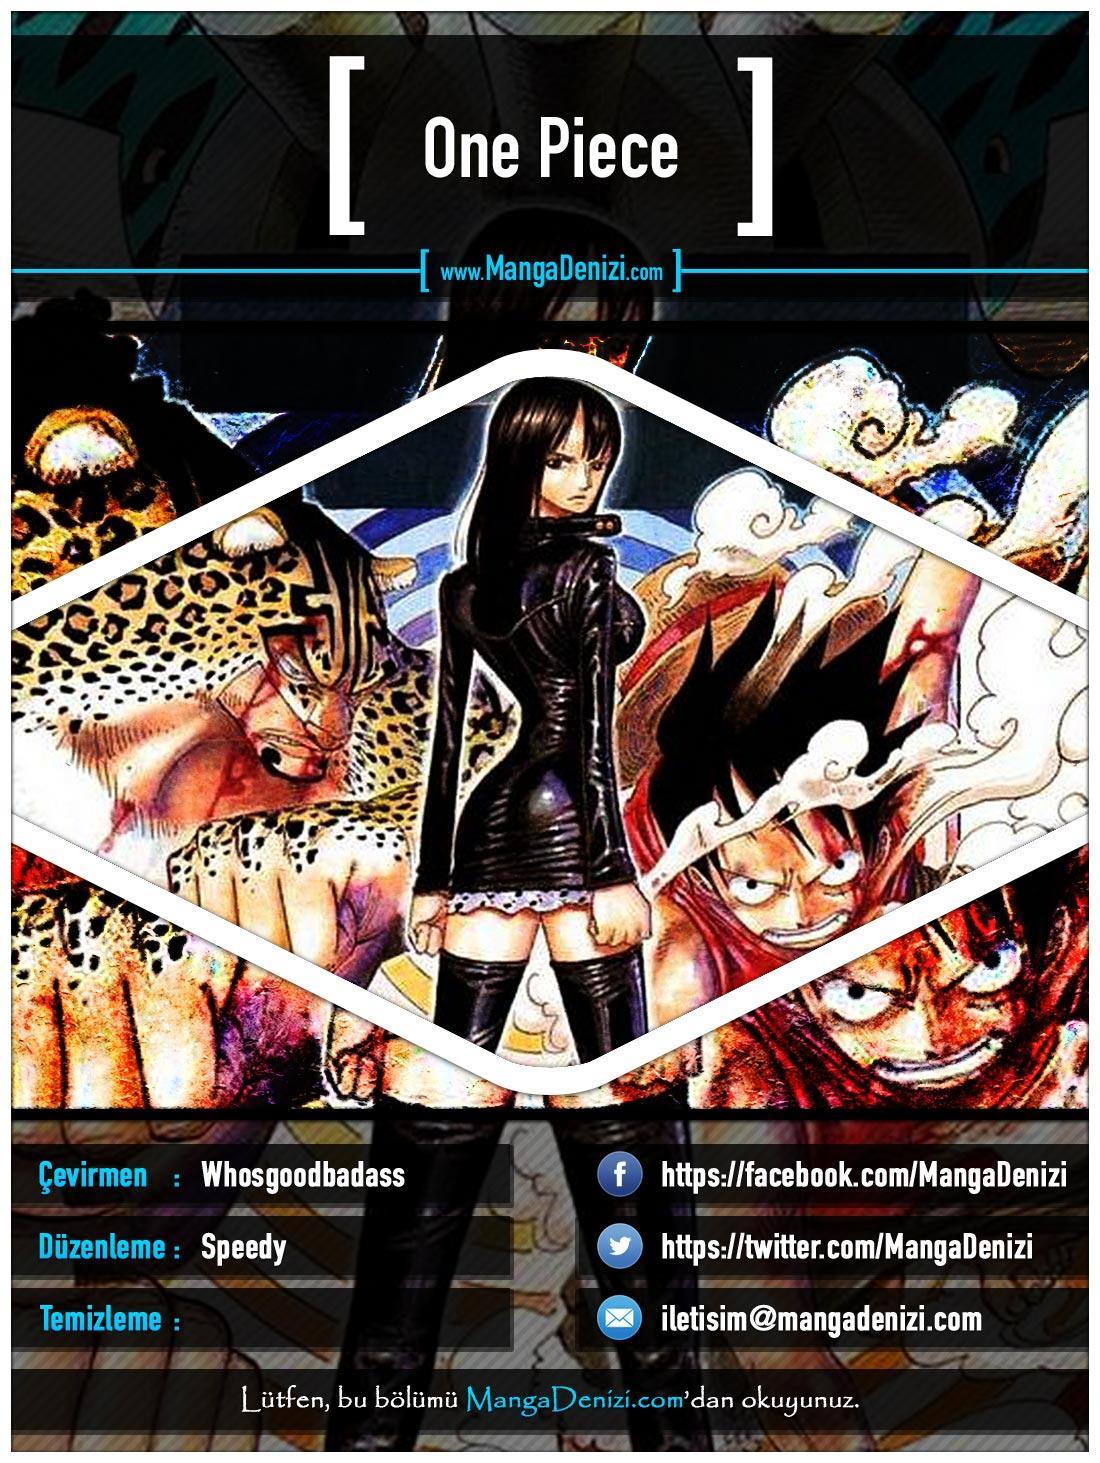 One Piece [Renkli] mangasının 0398 bölümünün 1. sayfasını okuyorsunuz.